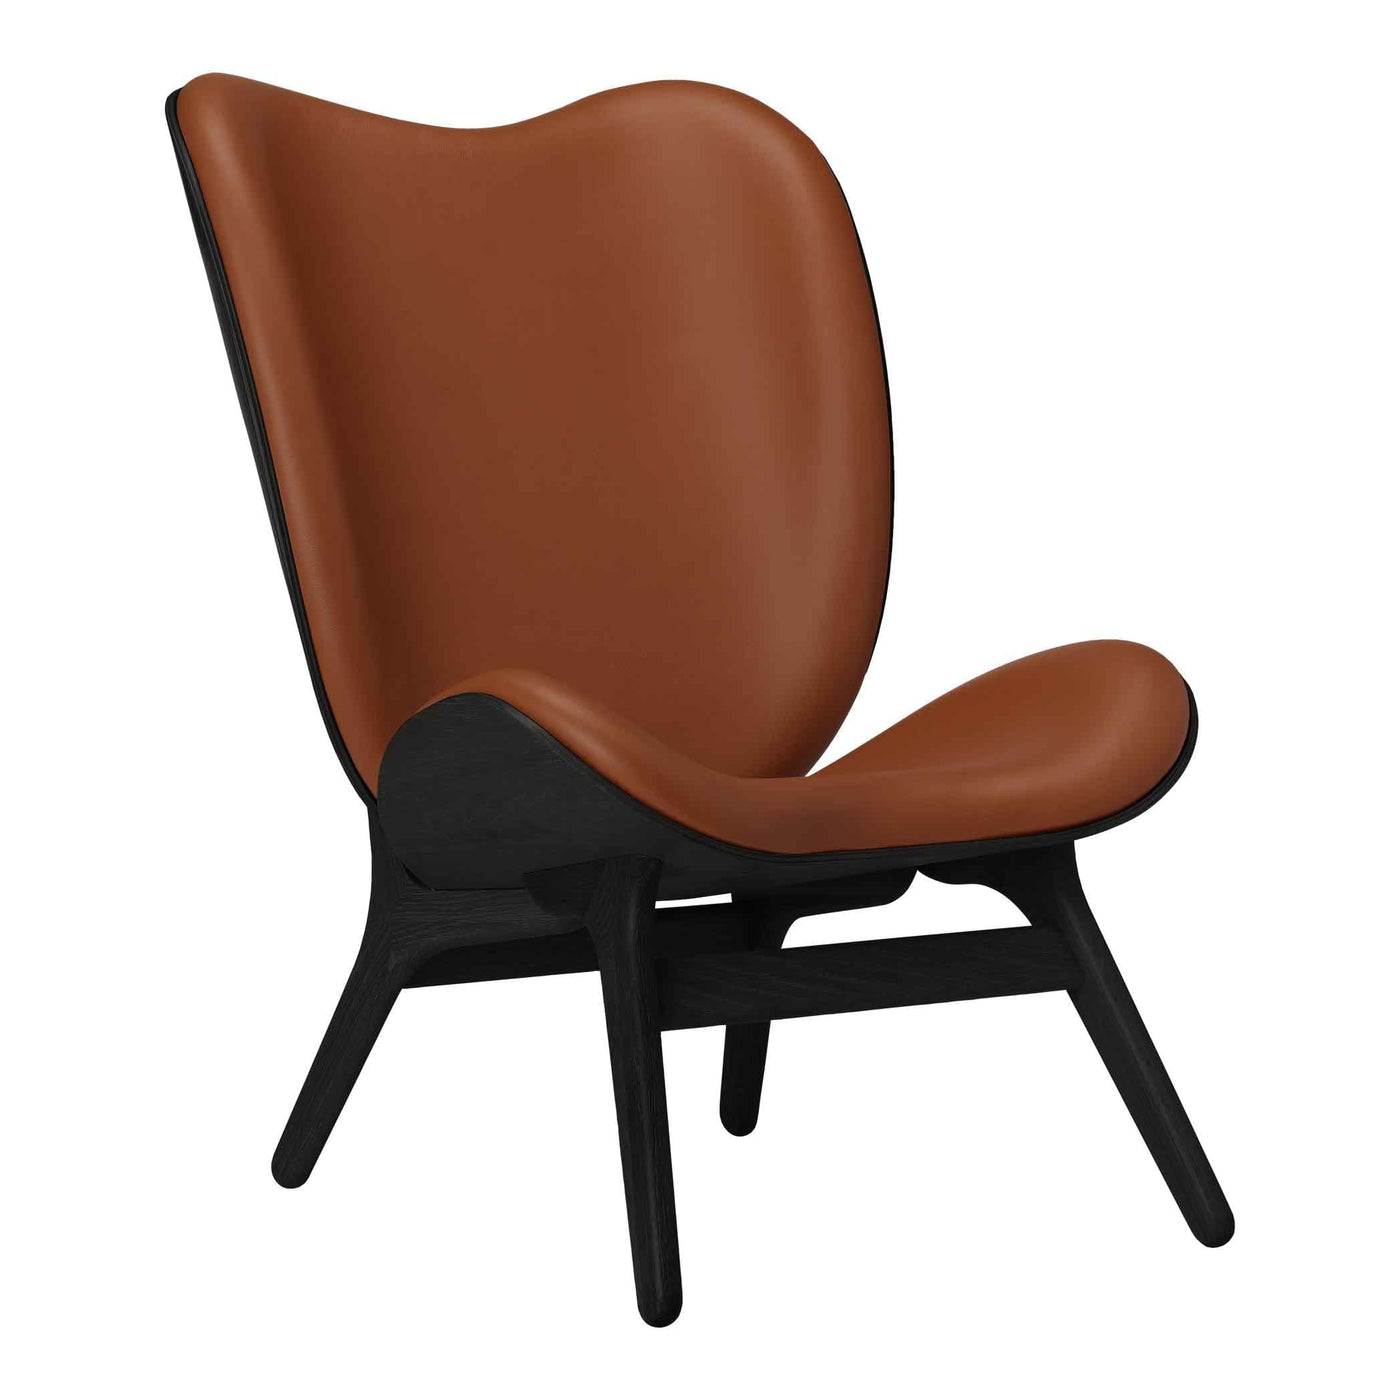 Umage A Conversation Piece Tall, fauteuil confortable avec dossier haut, en bois et tissu, chêne noir, cuir cognac